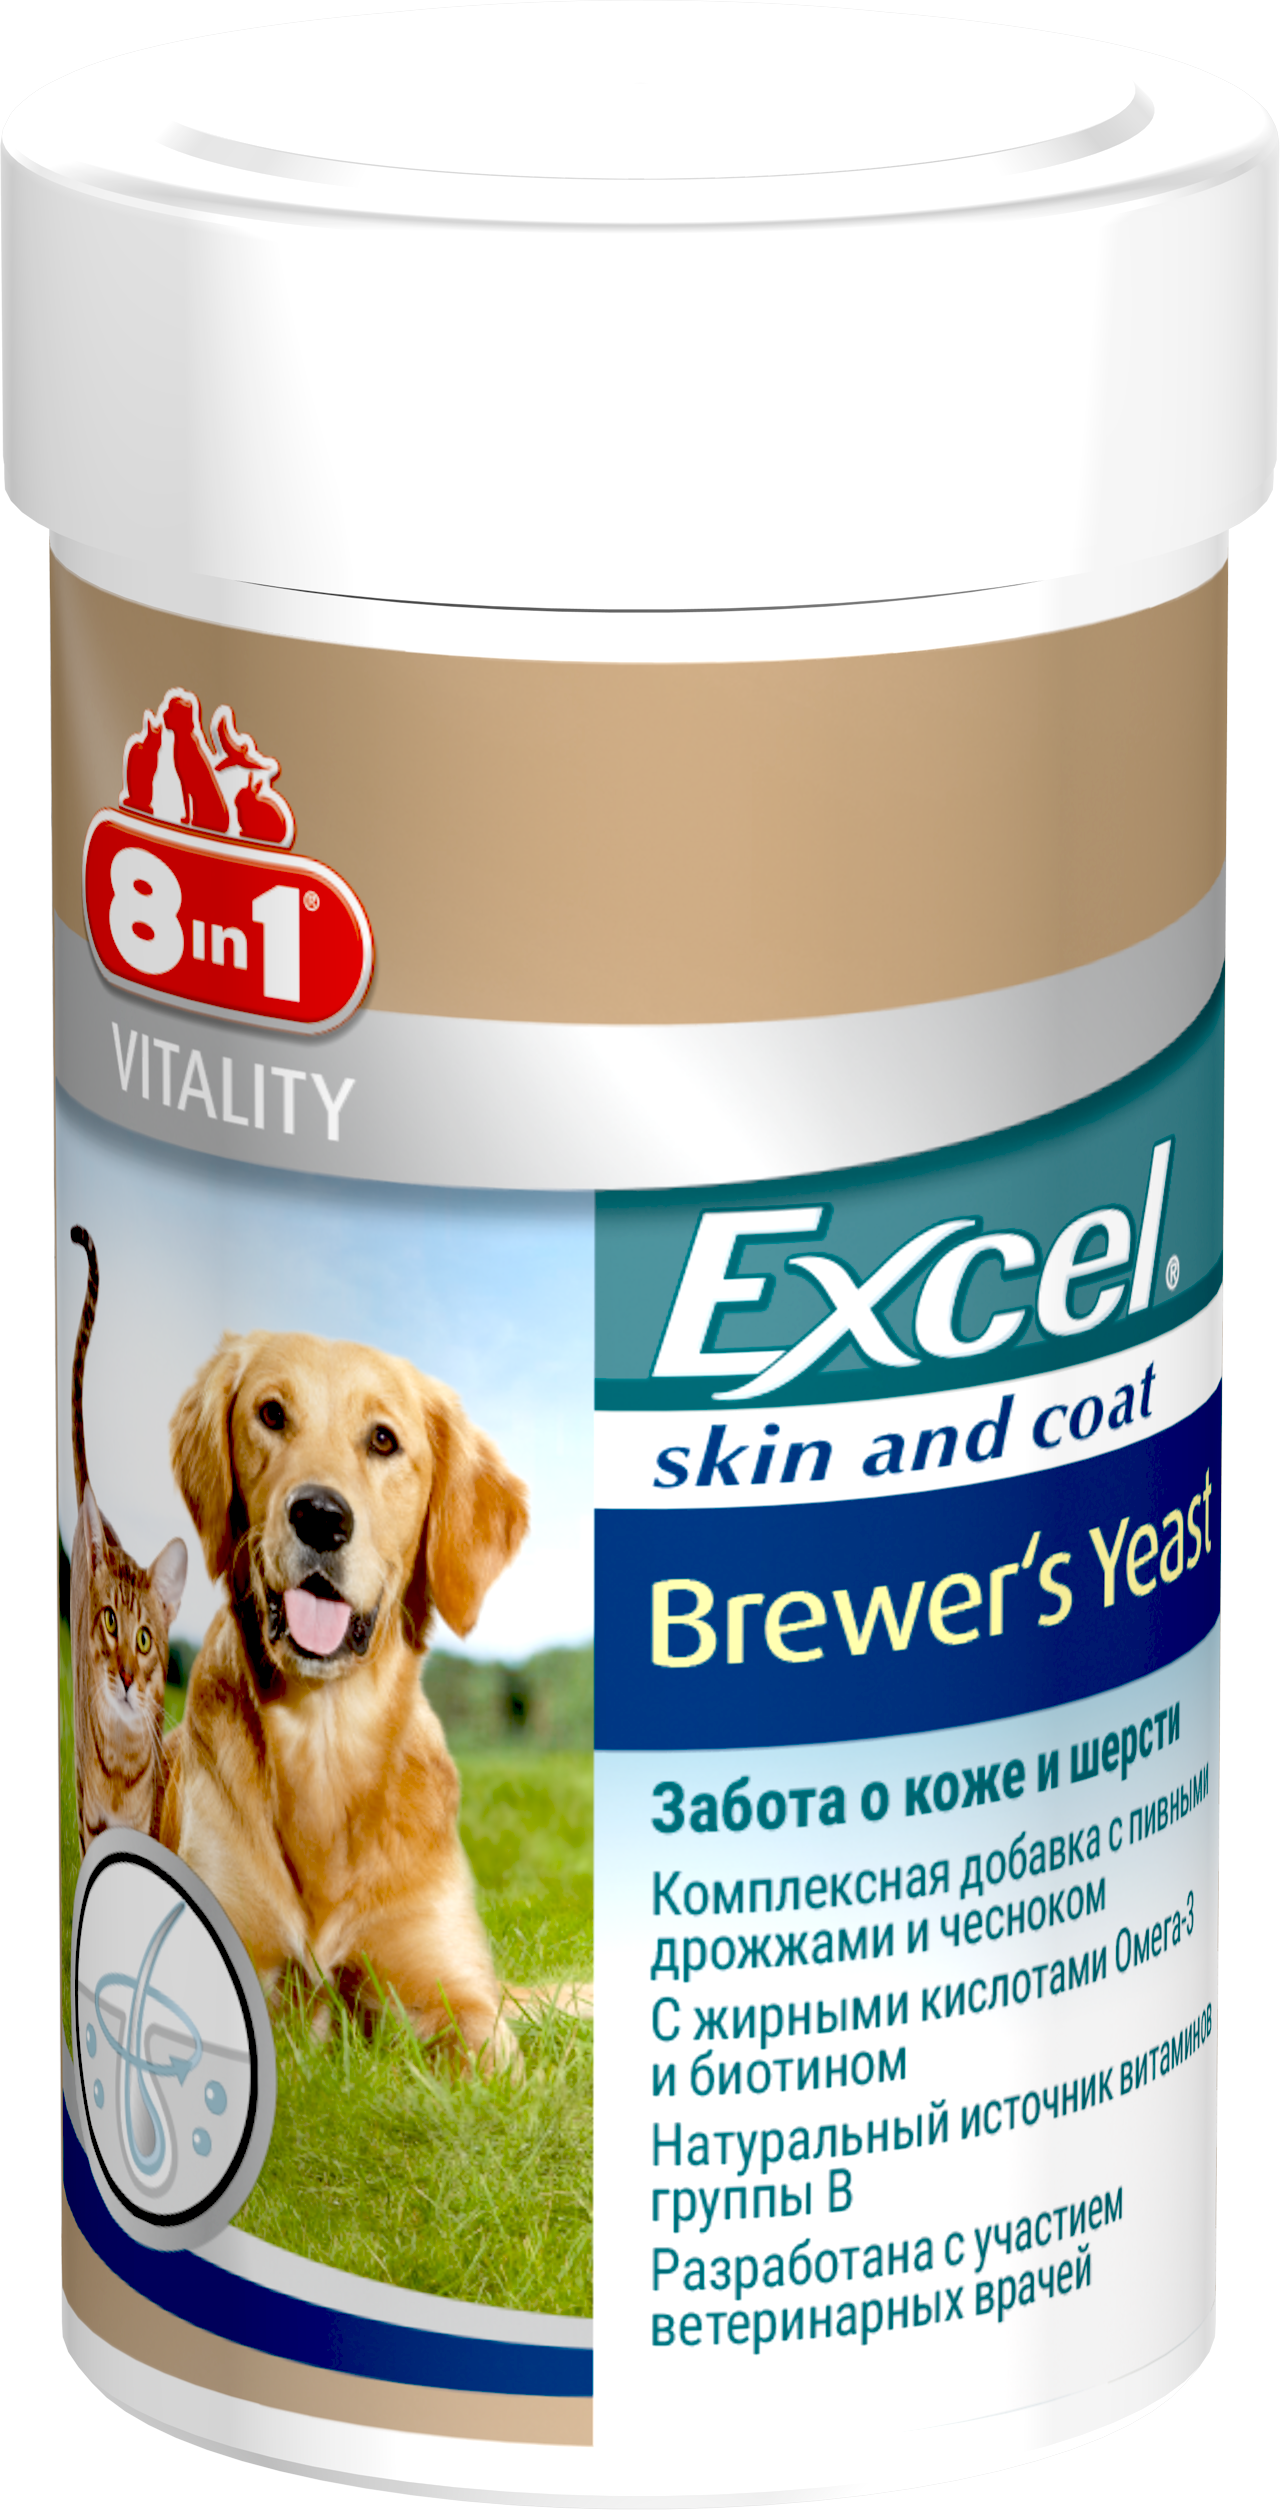 Excel Brewers yeast 8 in 1 для собак. Эксель 8 в 1 для щенков. Витамины эксель 8 в 1 для кошек и собак. 8в 1 эксклт пивные дрожжи. 8в1 витамины для собак